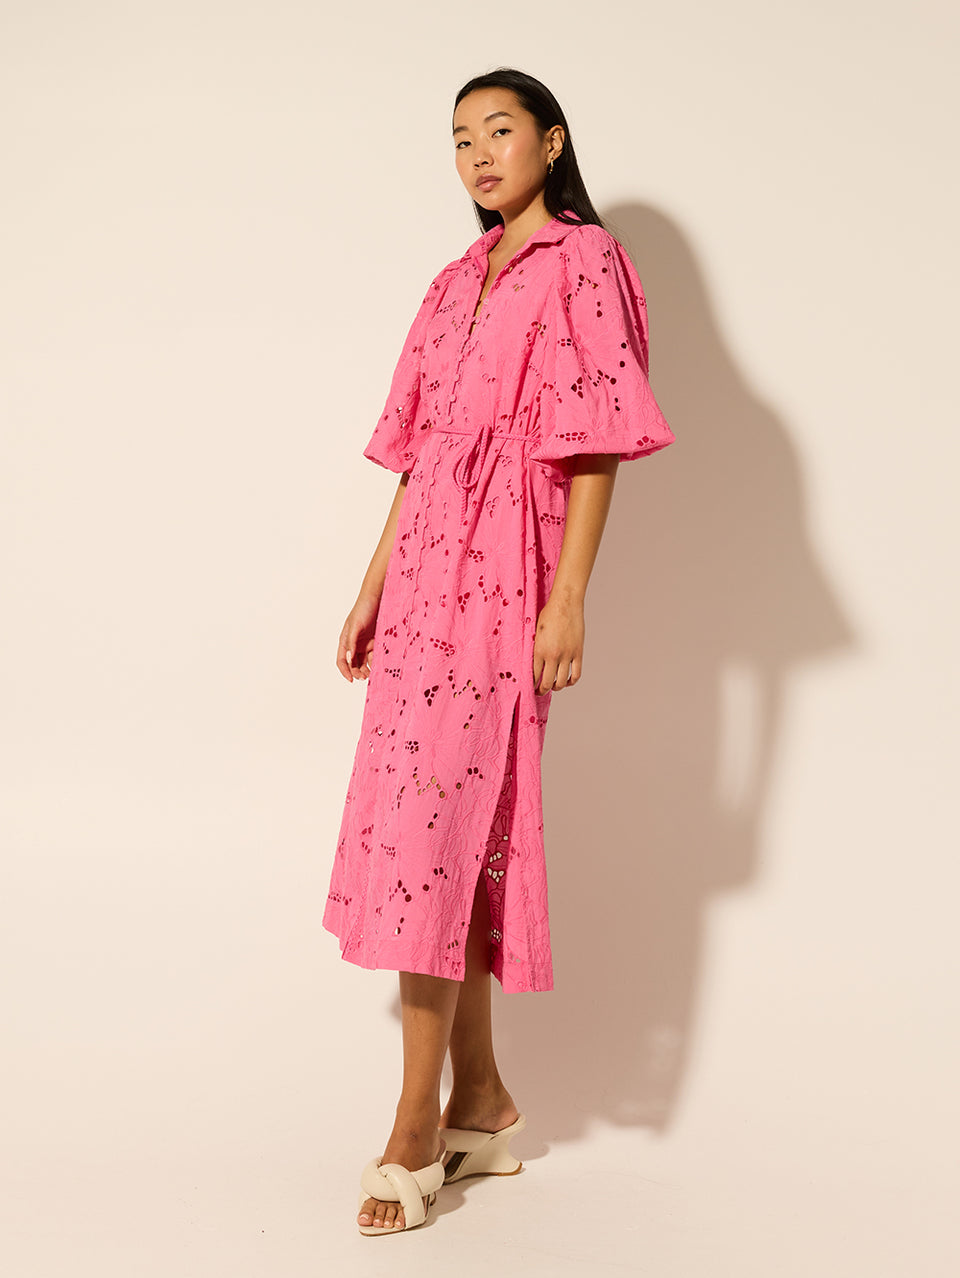 Corfu Midi Dress Pink KIVARI | Model wears pink midi dress side view